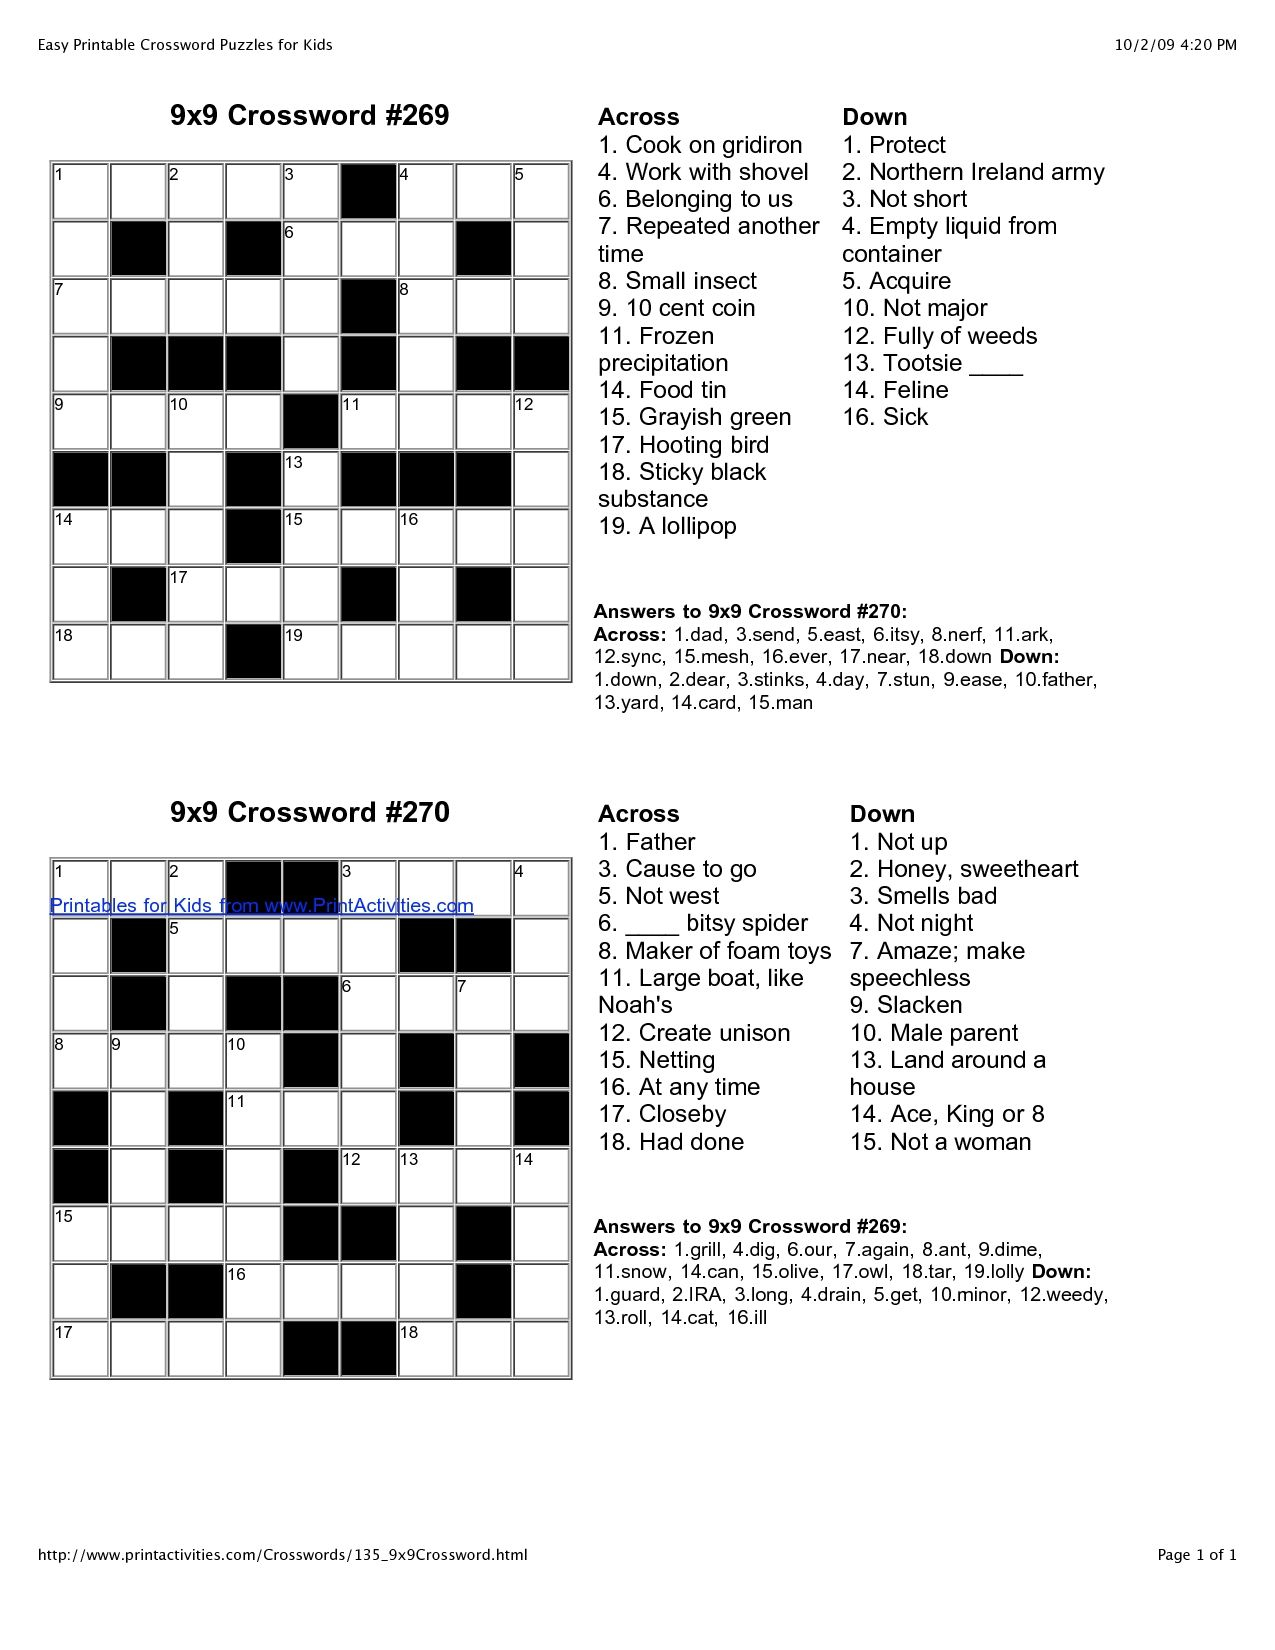 Children's Crosswords Printable Uk